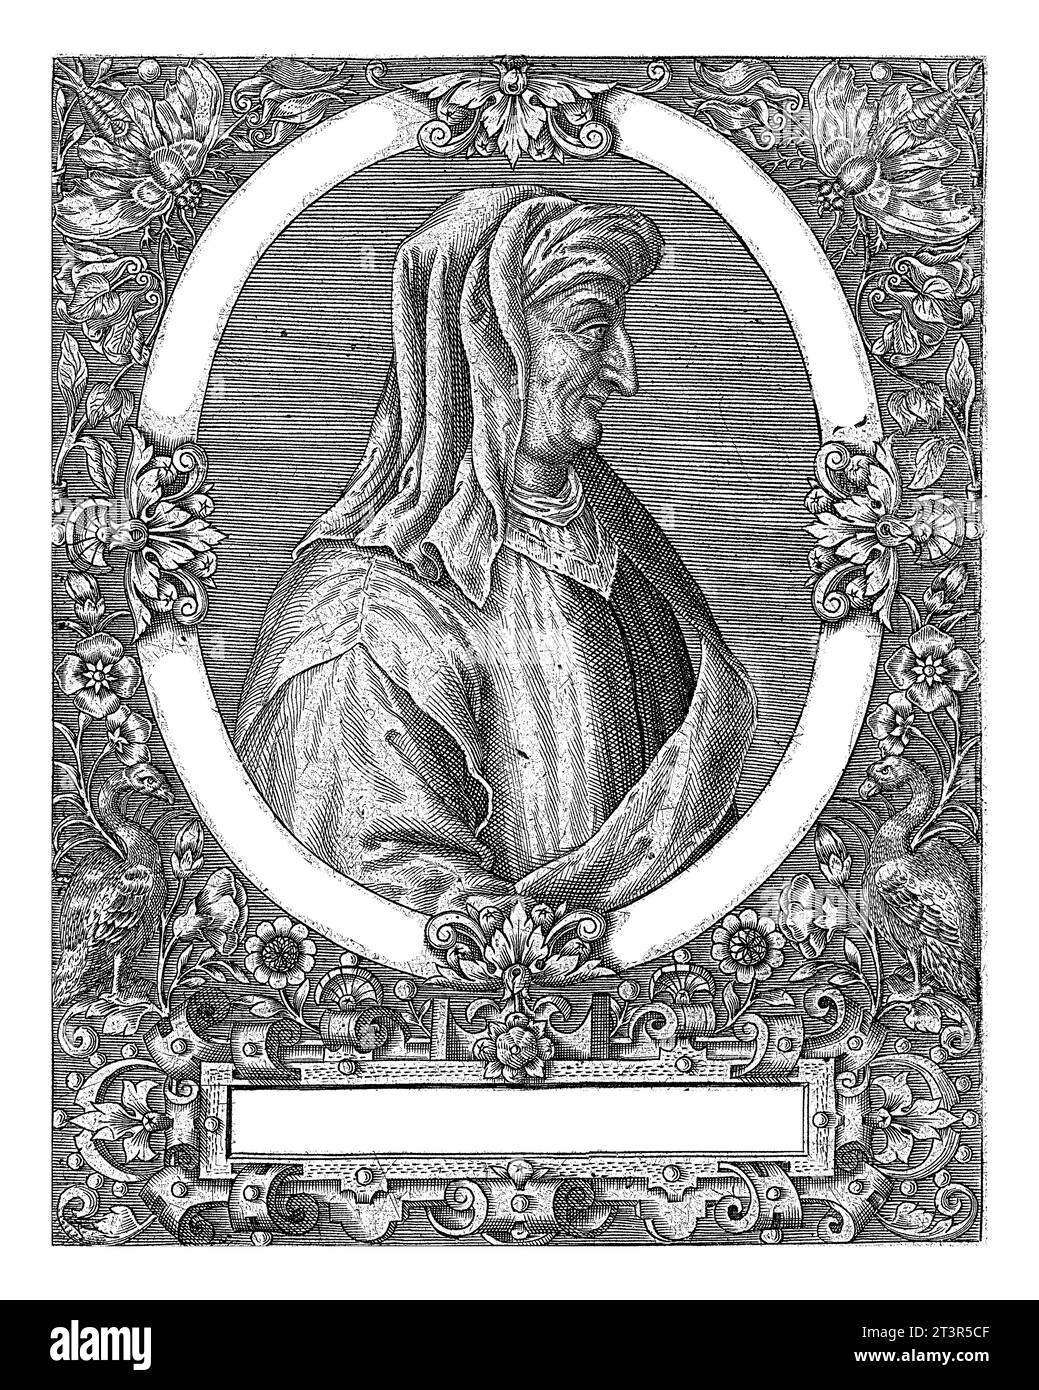 Porträt von Alexander de Imola, Theodor de Bry, nach Jean Jacques Boissard, 1669 Porträt des Juristen Alexander de Imola, in Oval mit Randbuchstaben Stockfoto